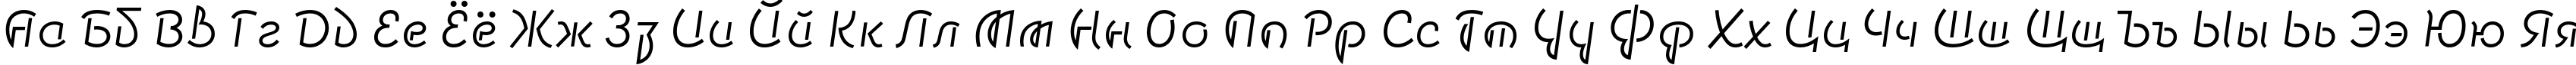 Пример написания русского алфавита шрифтом Smena Light